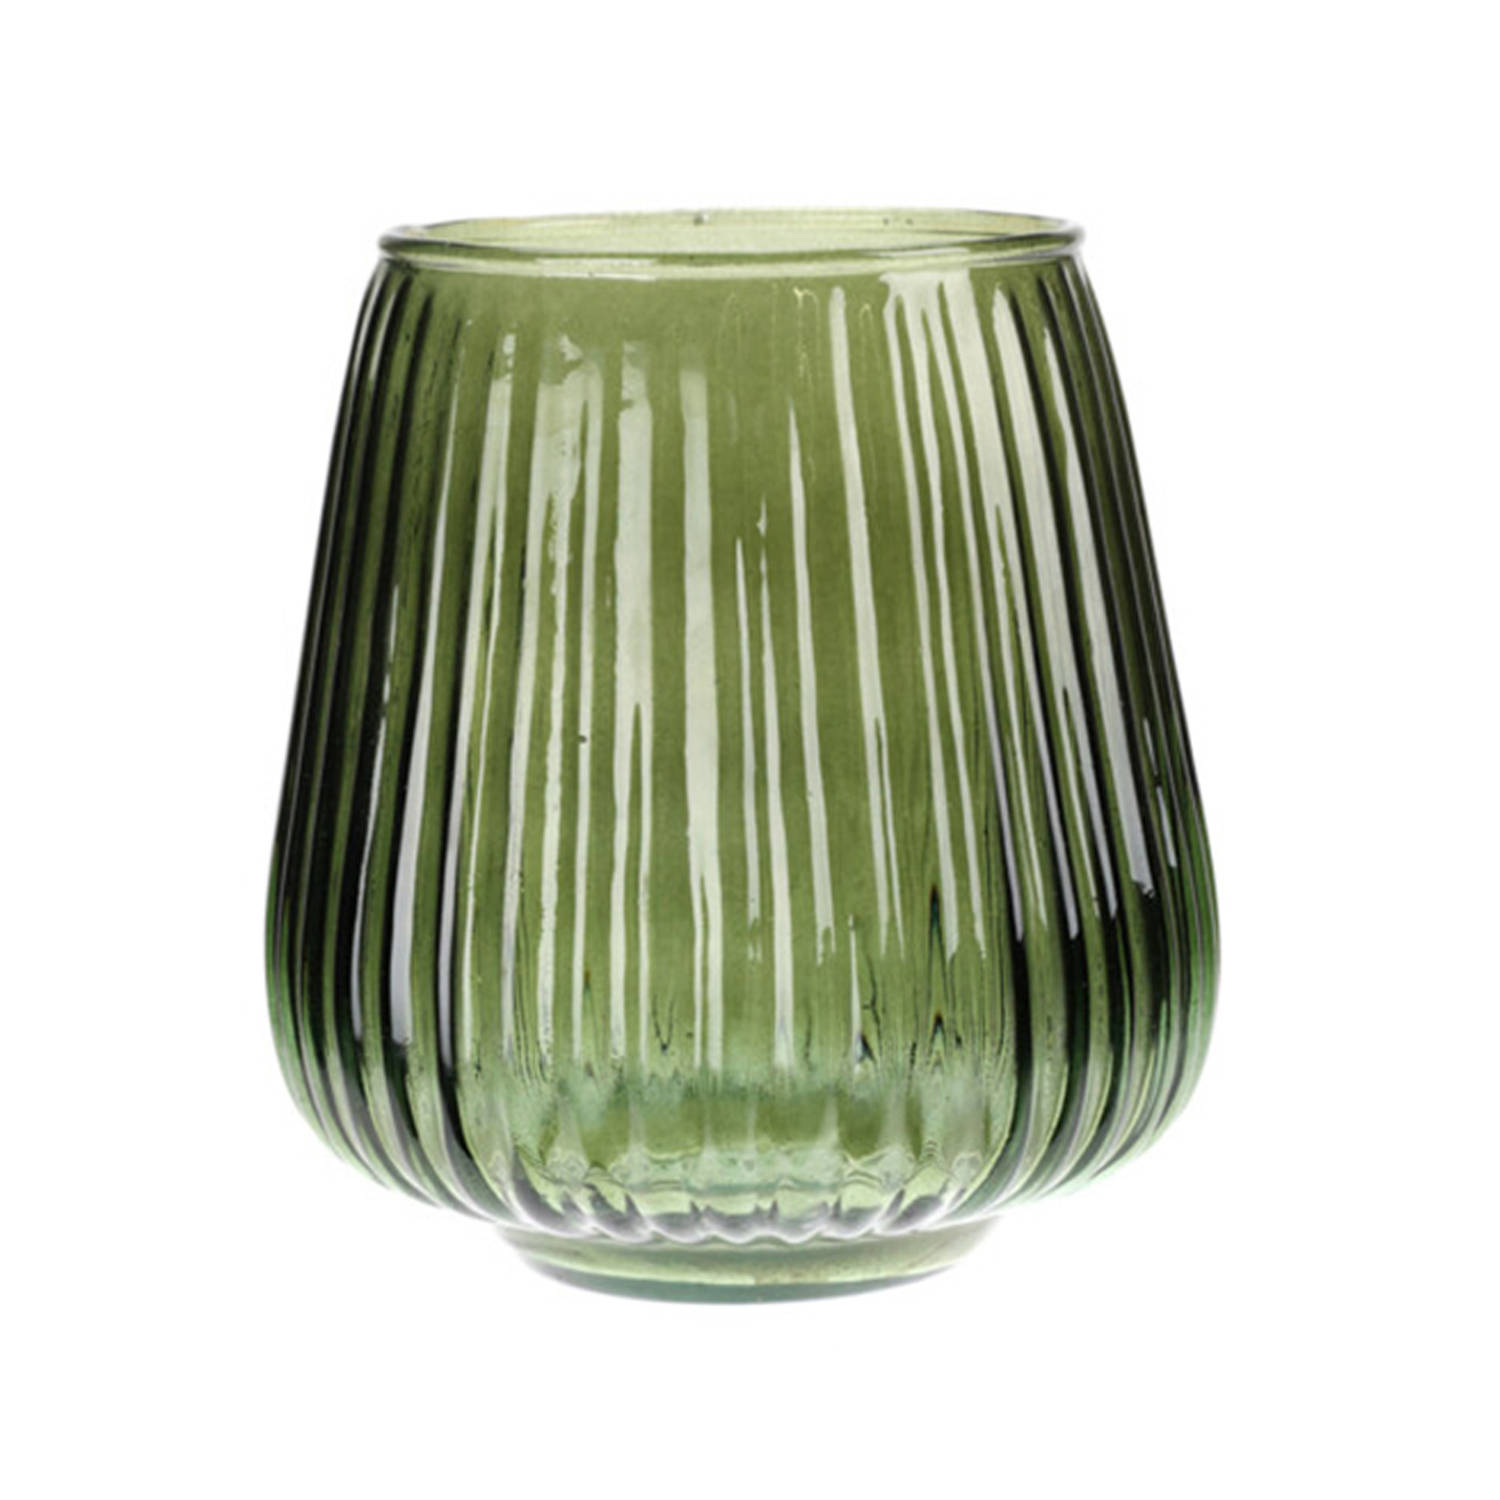 Excellent Houseware glazen vaas-bloemen vazen groen 18 x 19 cm Vazen